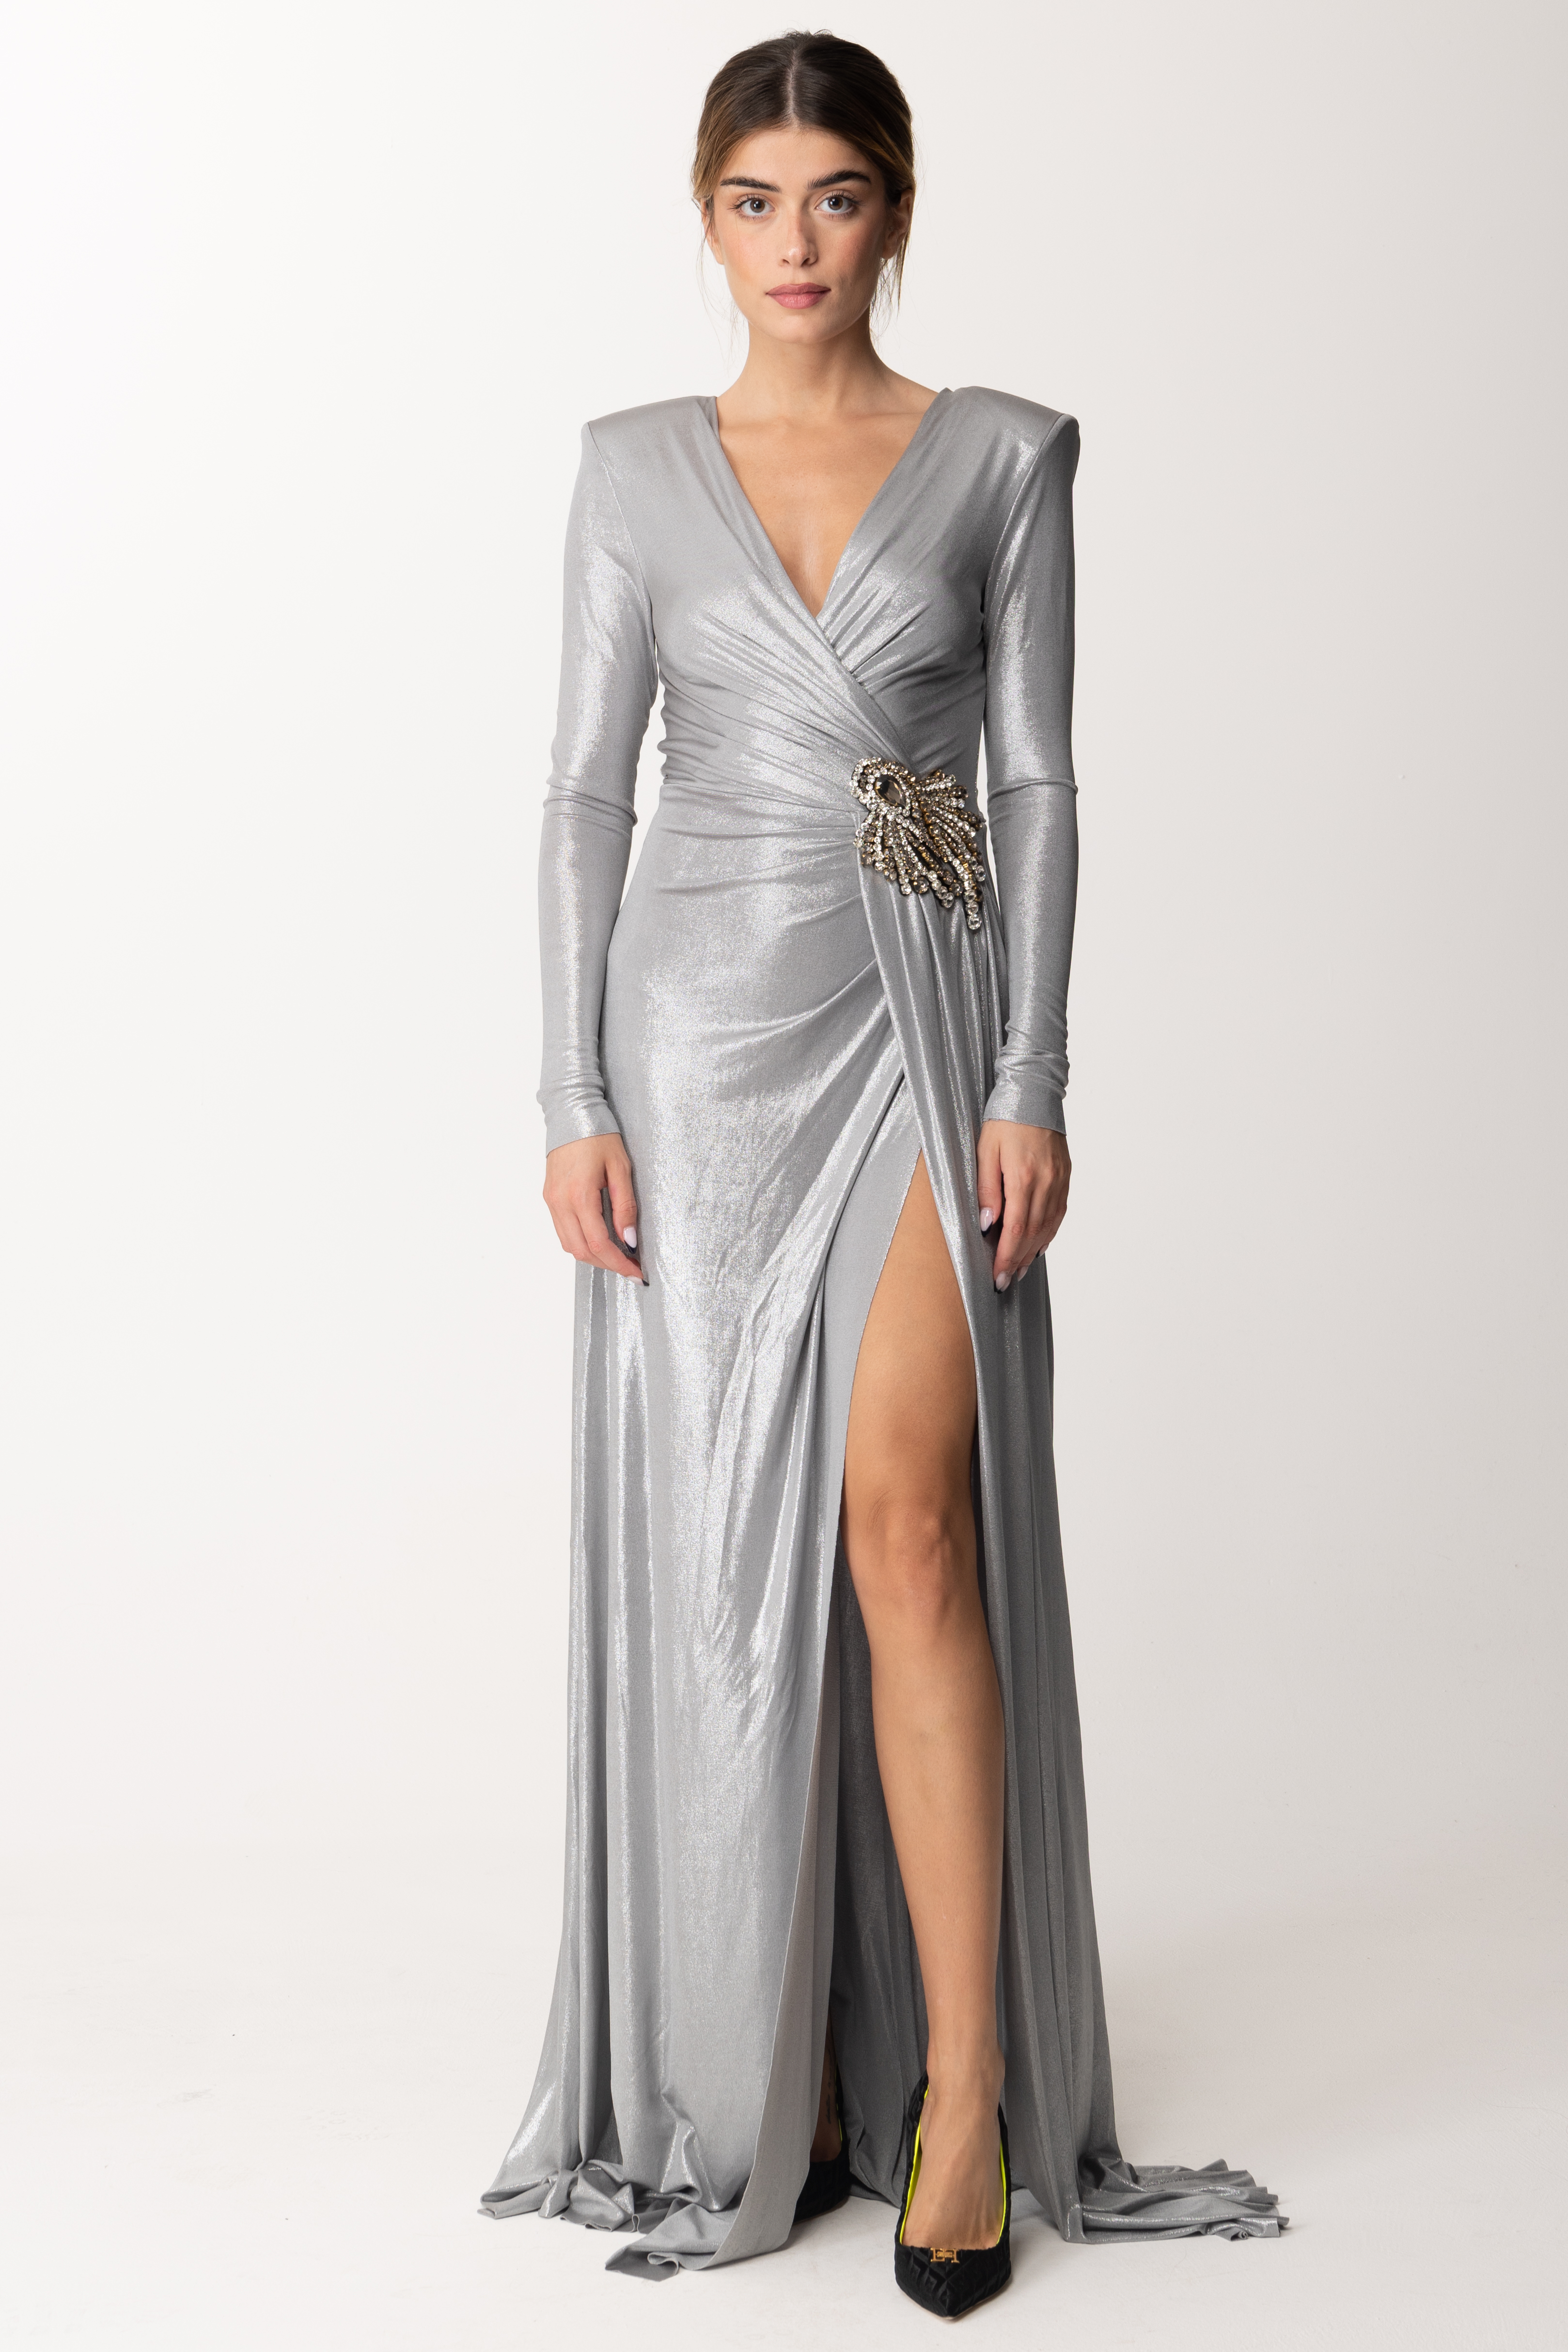 Vorschau: Marco Bologna Langes silbernes Kleid Silver